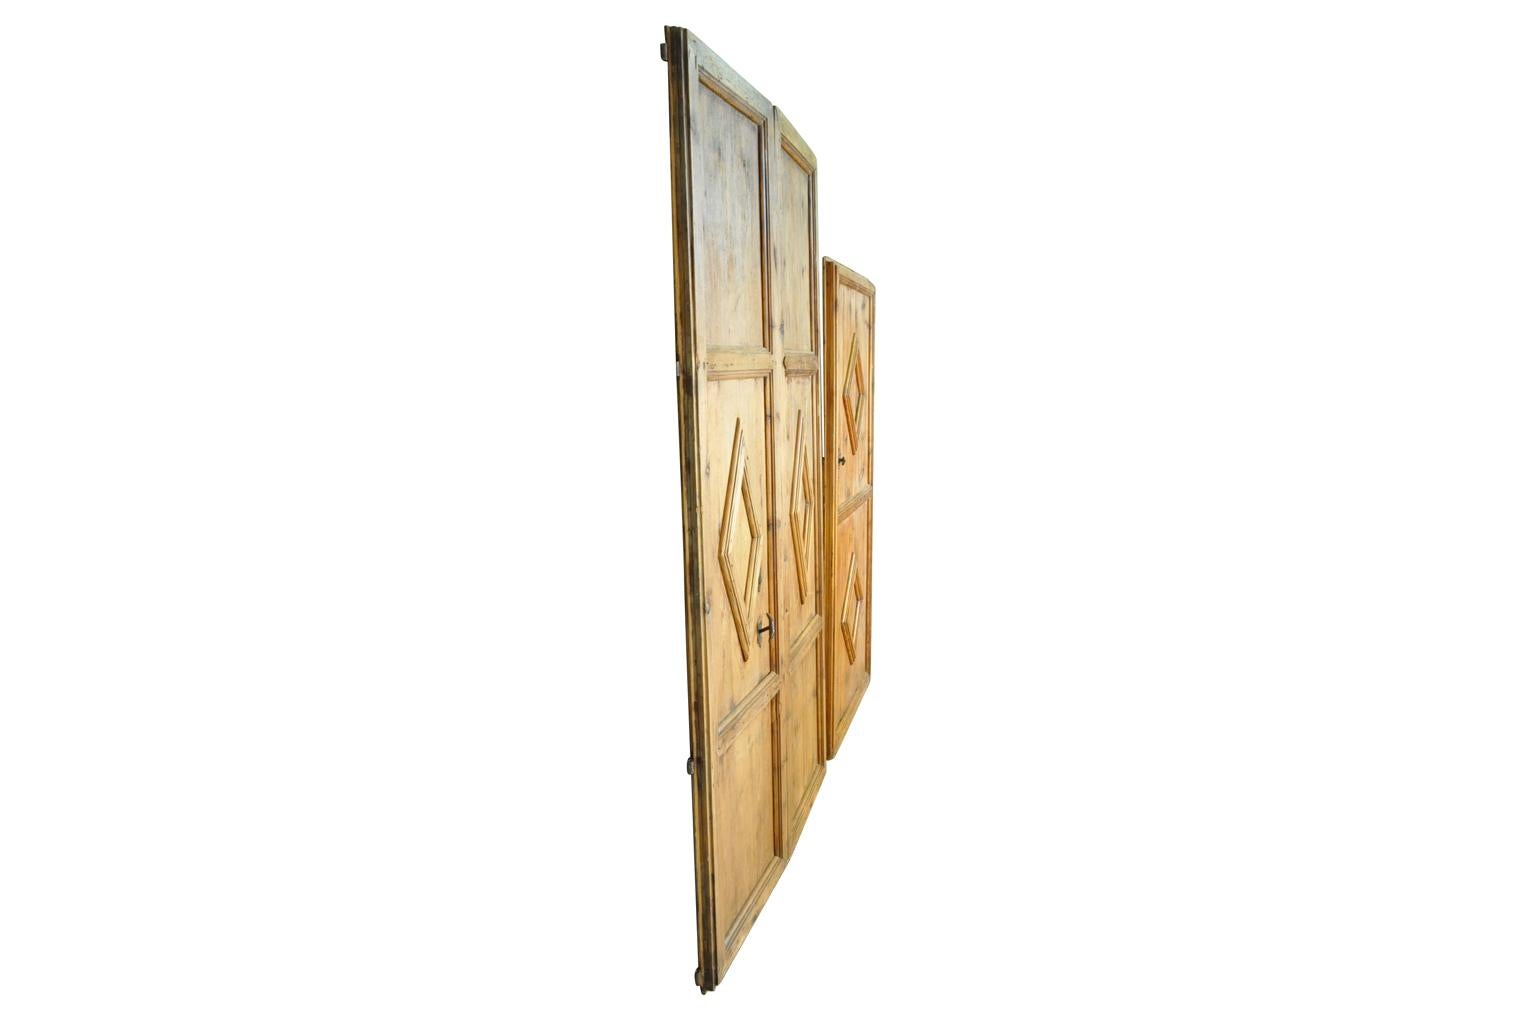 Ein herausragendes Türenset aus dem 17. Jahrhundert aus der katalanischen Region Spaniens. Das Set besteht aus einem Paar Türen und einer einzelnen Tür, die alle wunderbar aus Meleze-Holz - einer sehr harten Kiefer - gefertigt sind. Die Türen sind